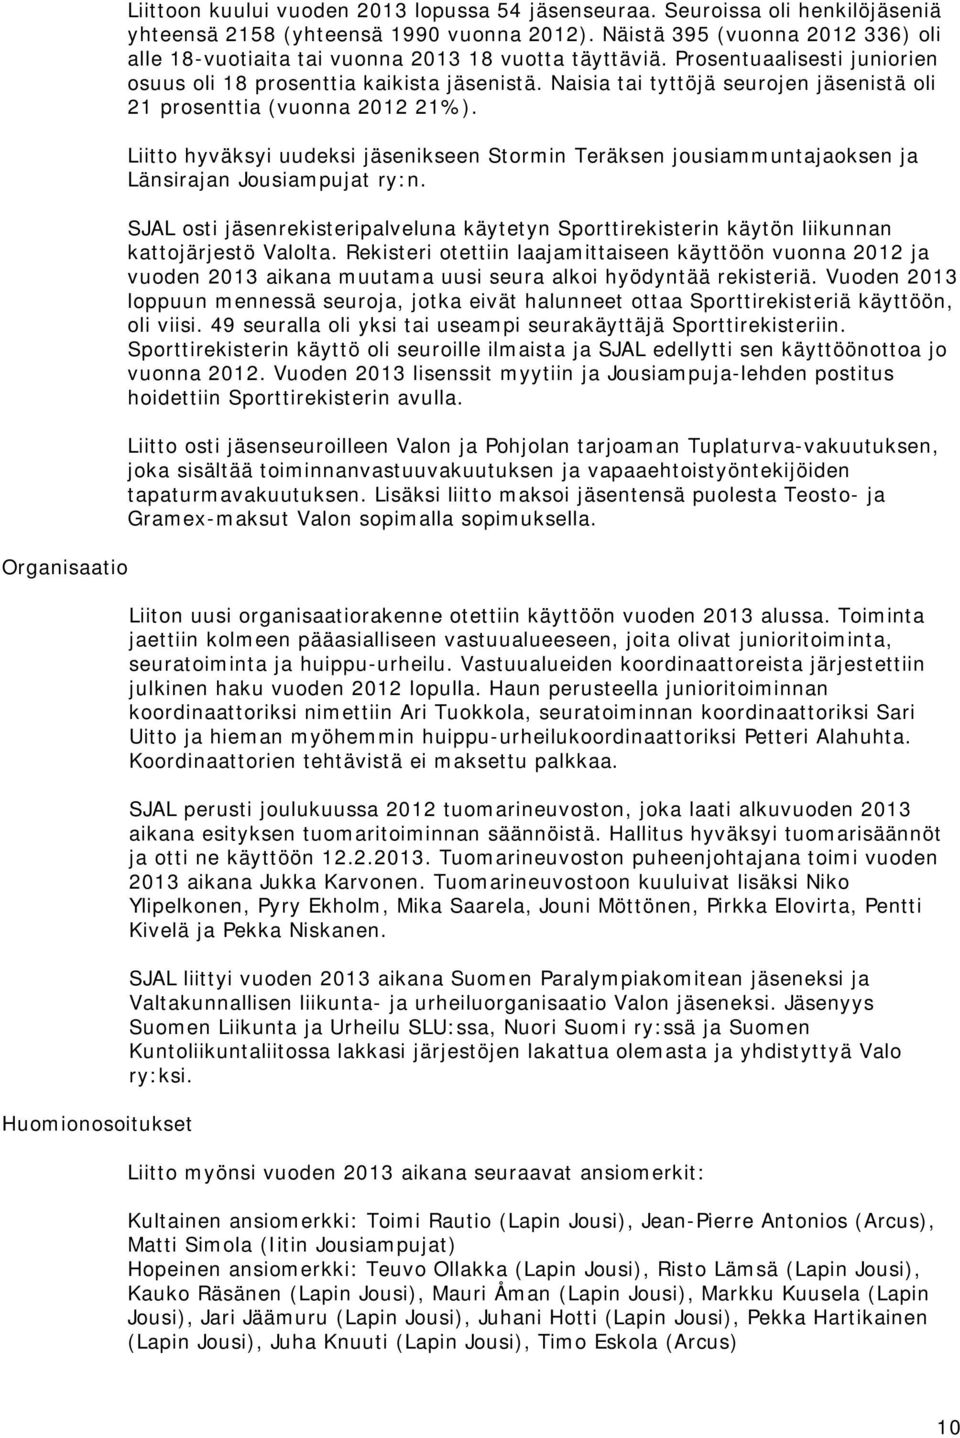 Naisia tai tyttöjä seurojen jäsenistä oli 21 prosenttia (vuonna 2012 21%). Liitto hyväksyi uudeksi jäsenikseen Stormin Teräksen jousiammuntajaoksen ja Länsirajan Jousiampujat ry:n.